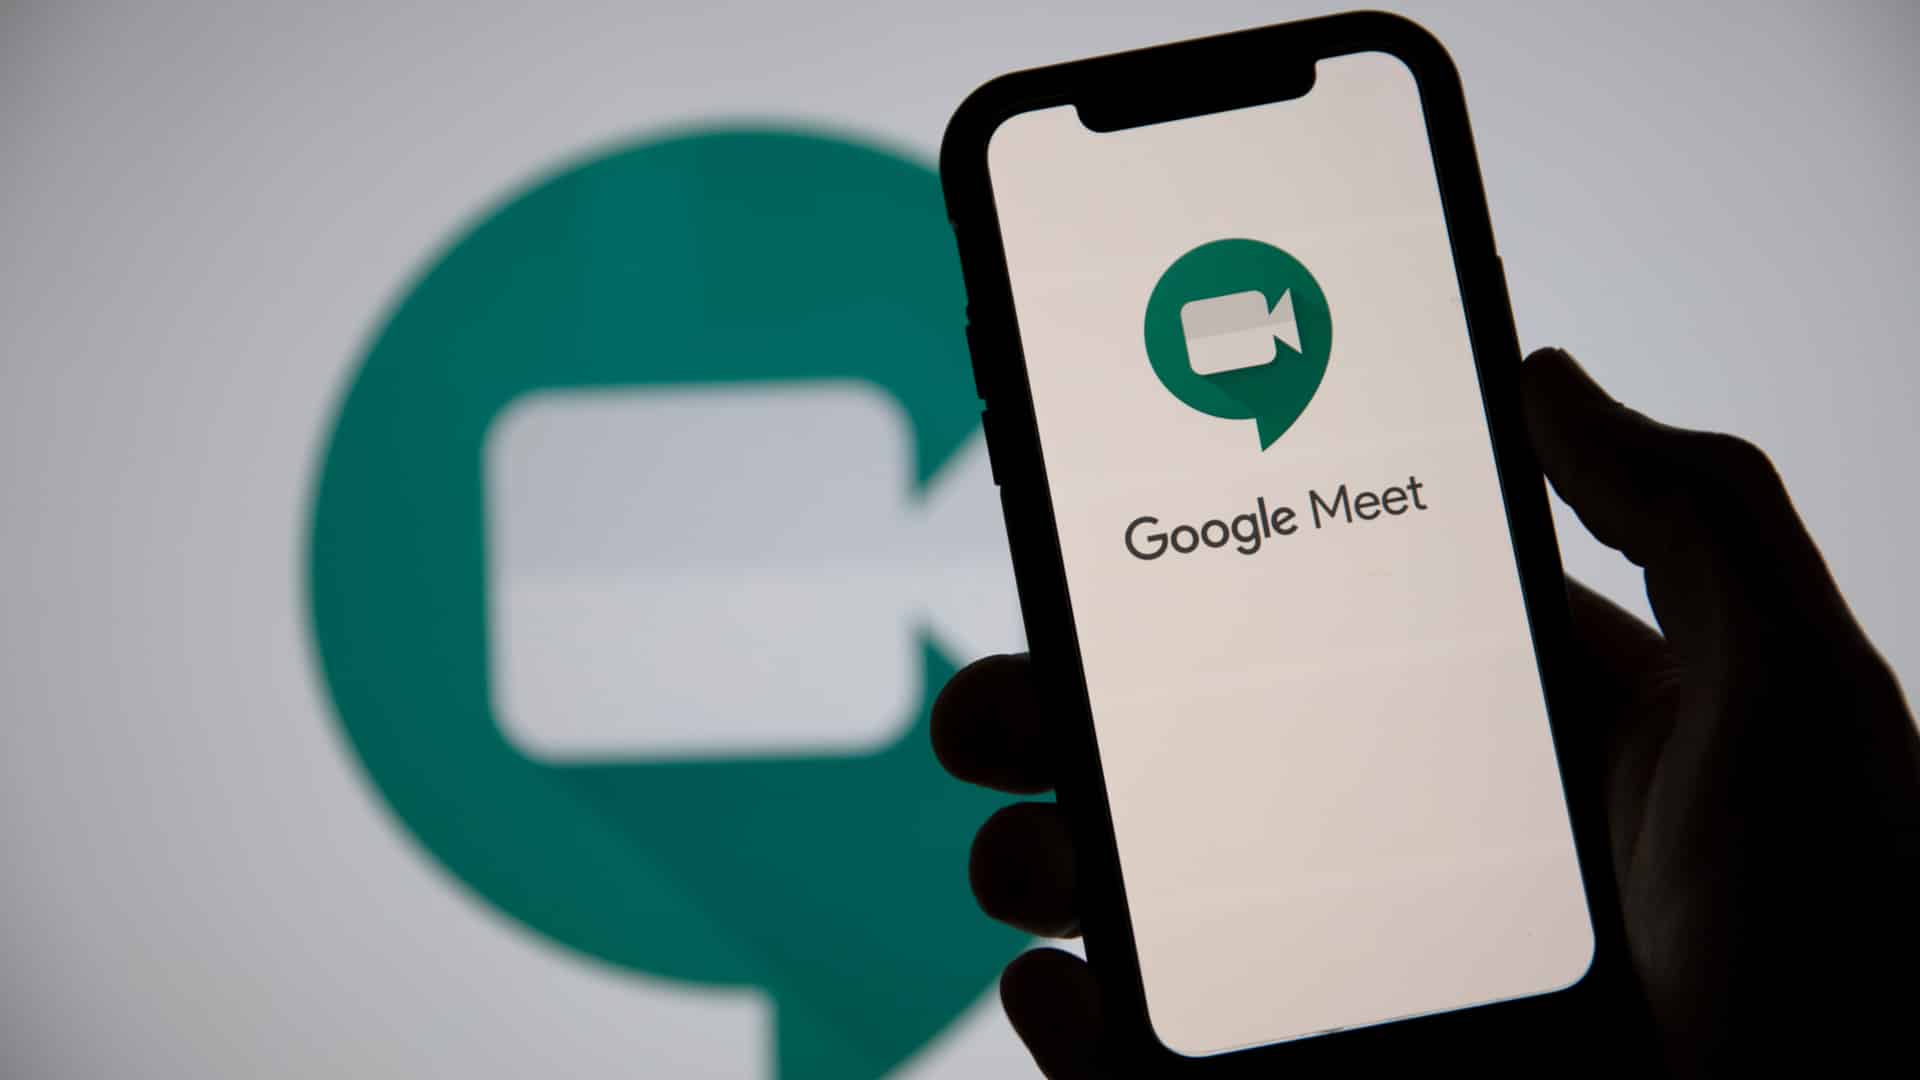 Google Meet توفر غرفًا جانبية لعملاء التعليم